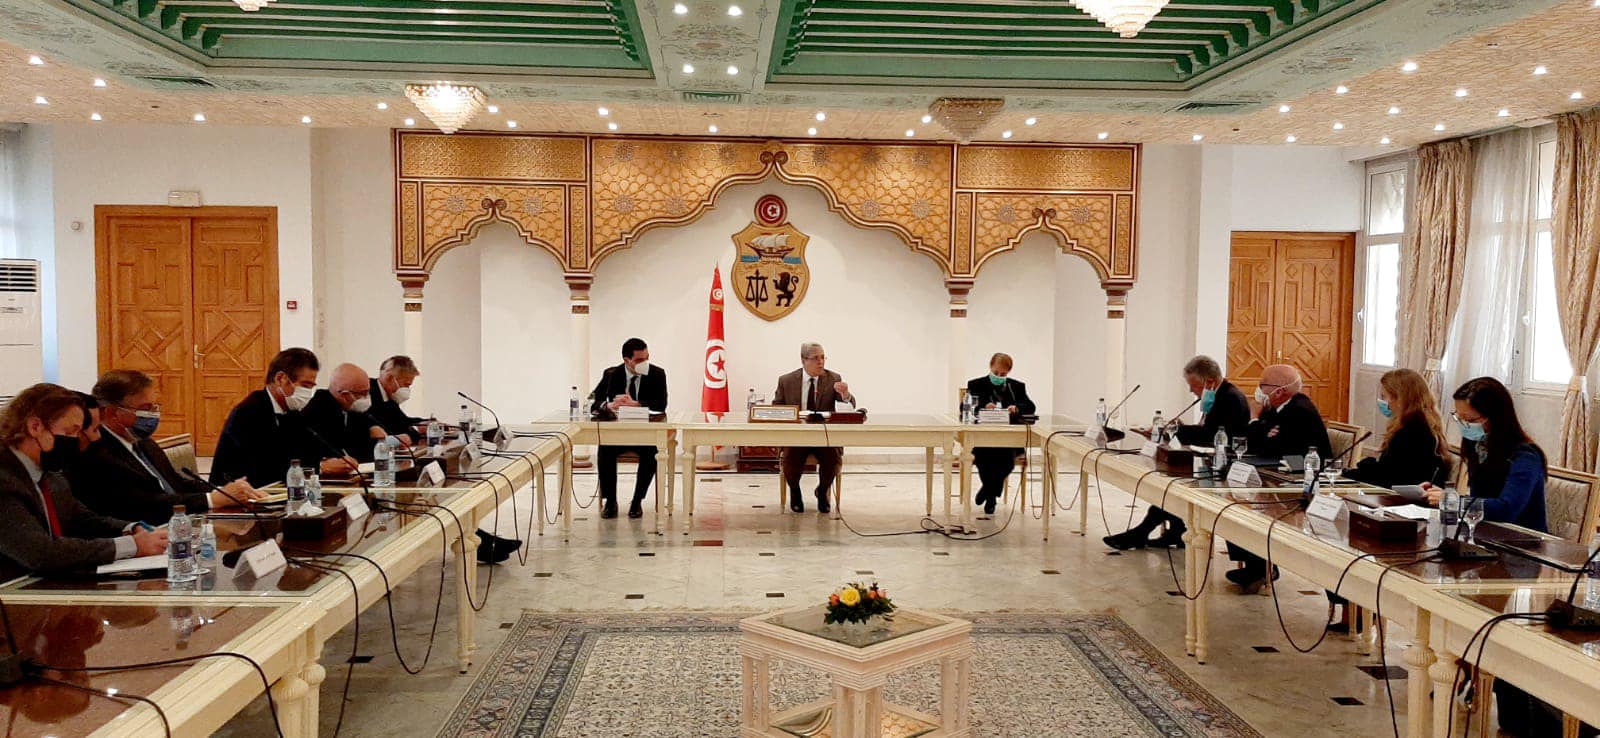 الجرندي يبرّر حلّ المجلس الأعلى للقضاء لسفراء “مجموعة السبعة”